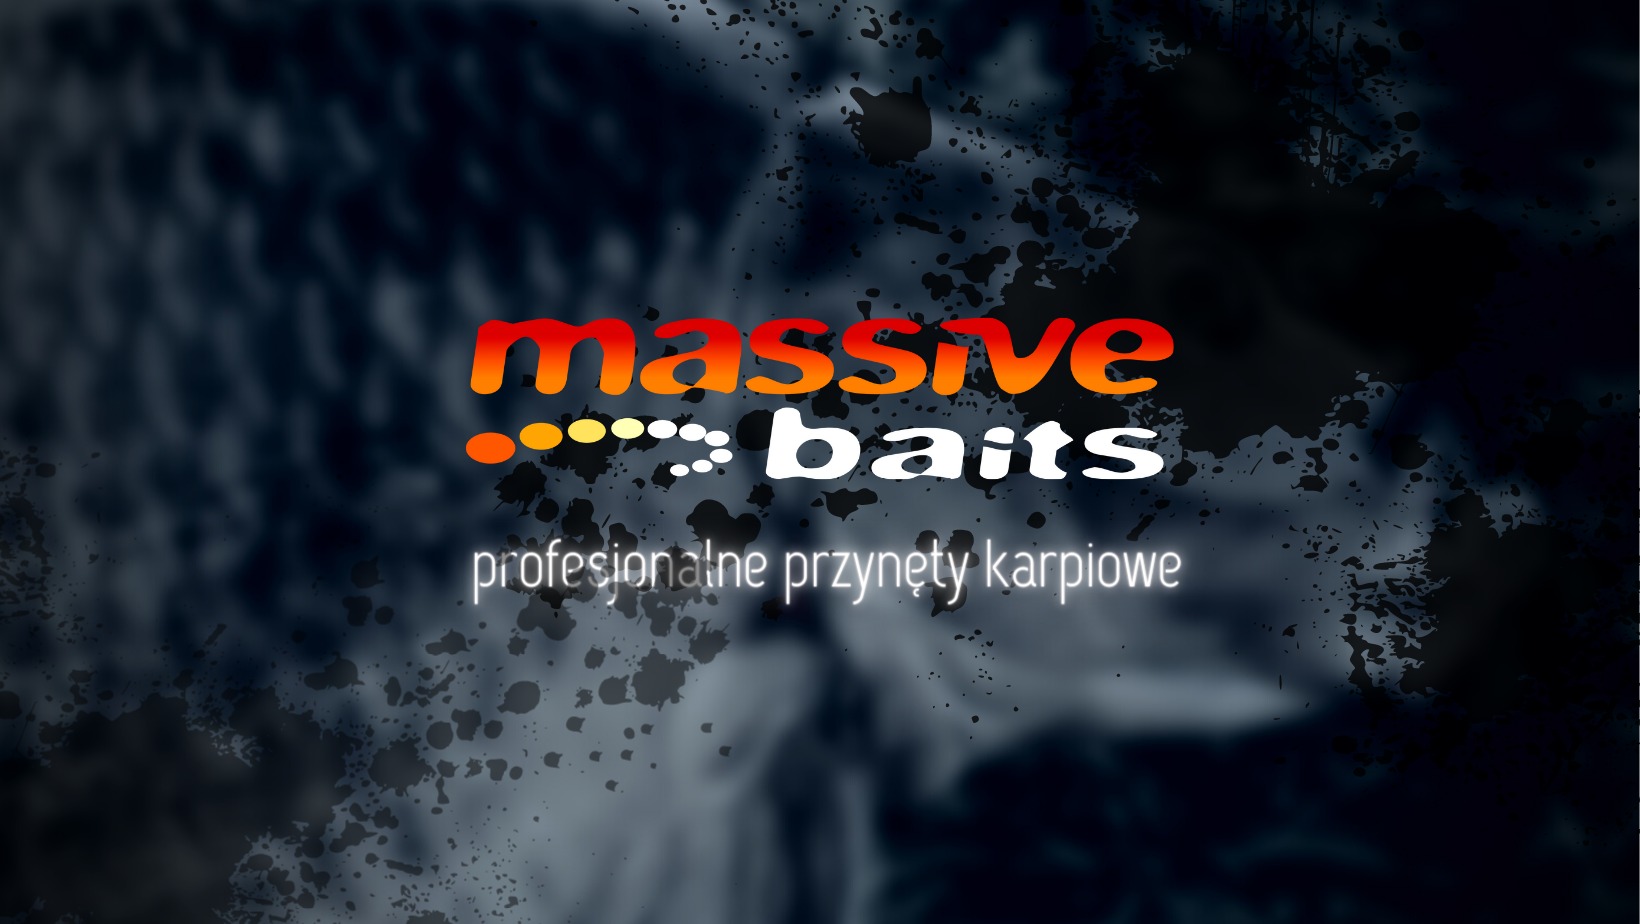 MASSIVE BAITS